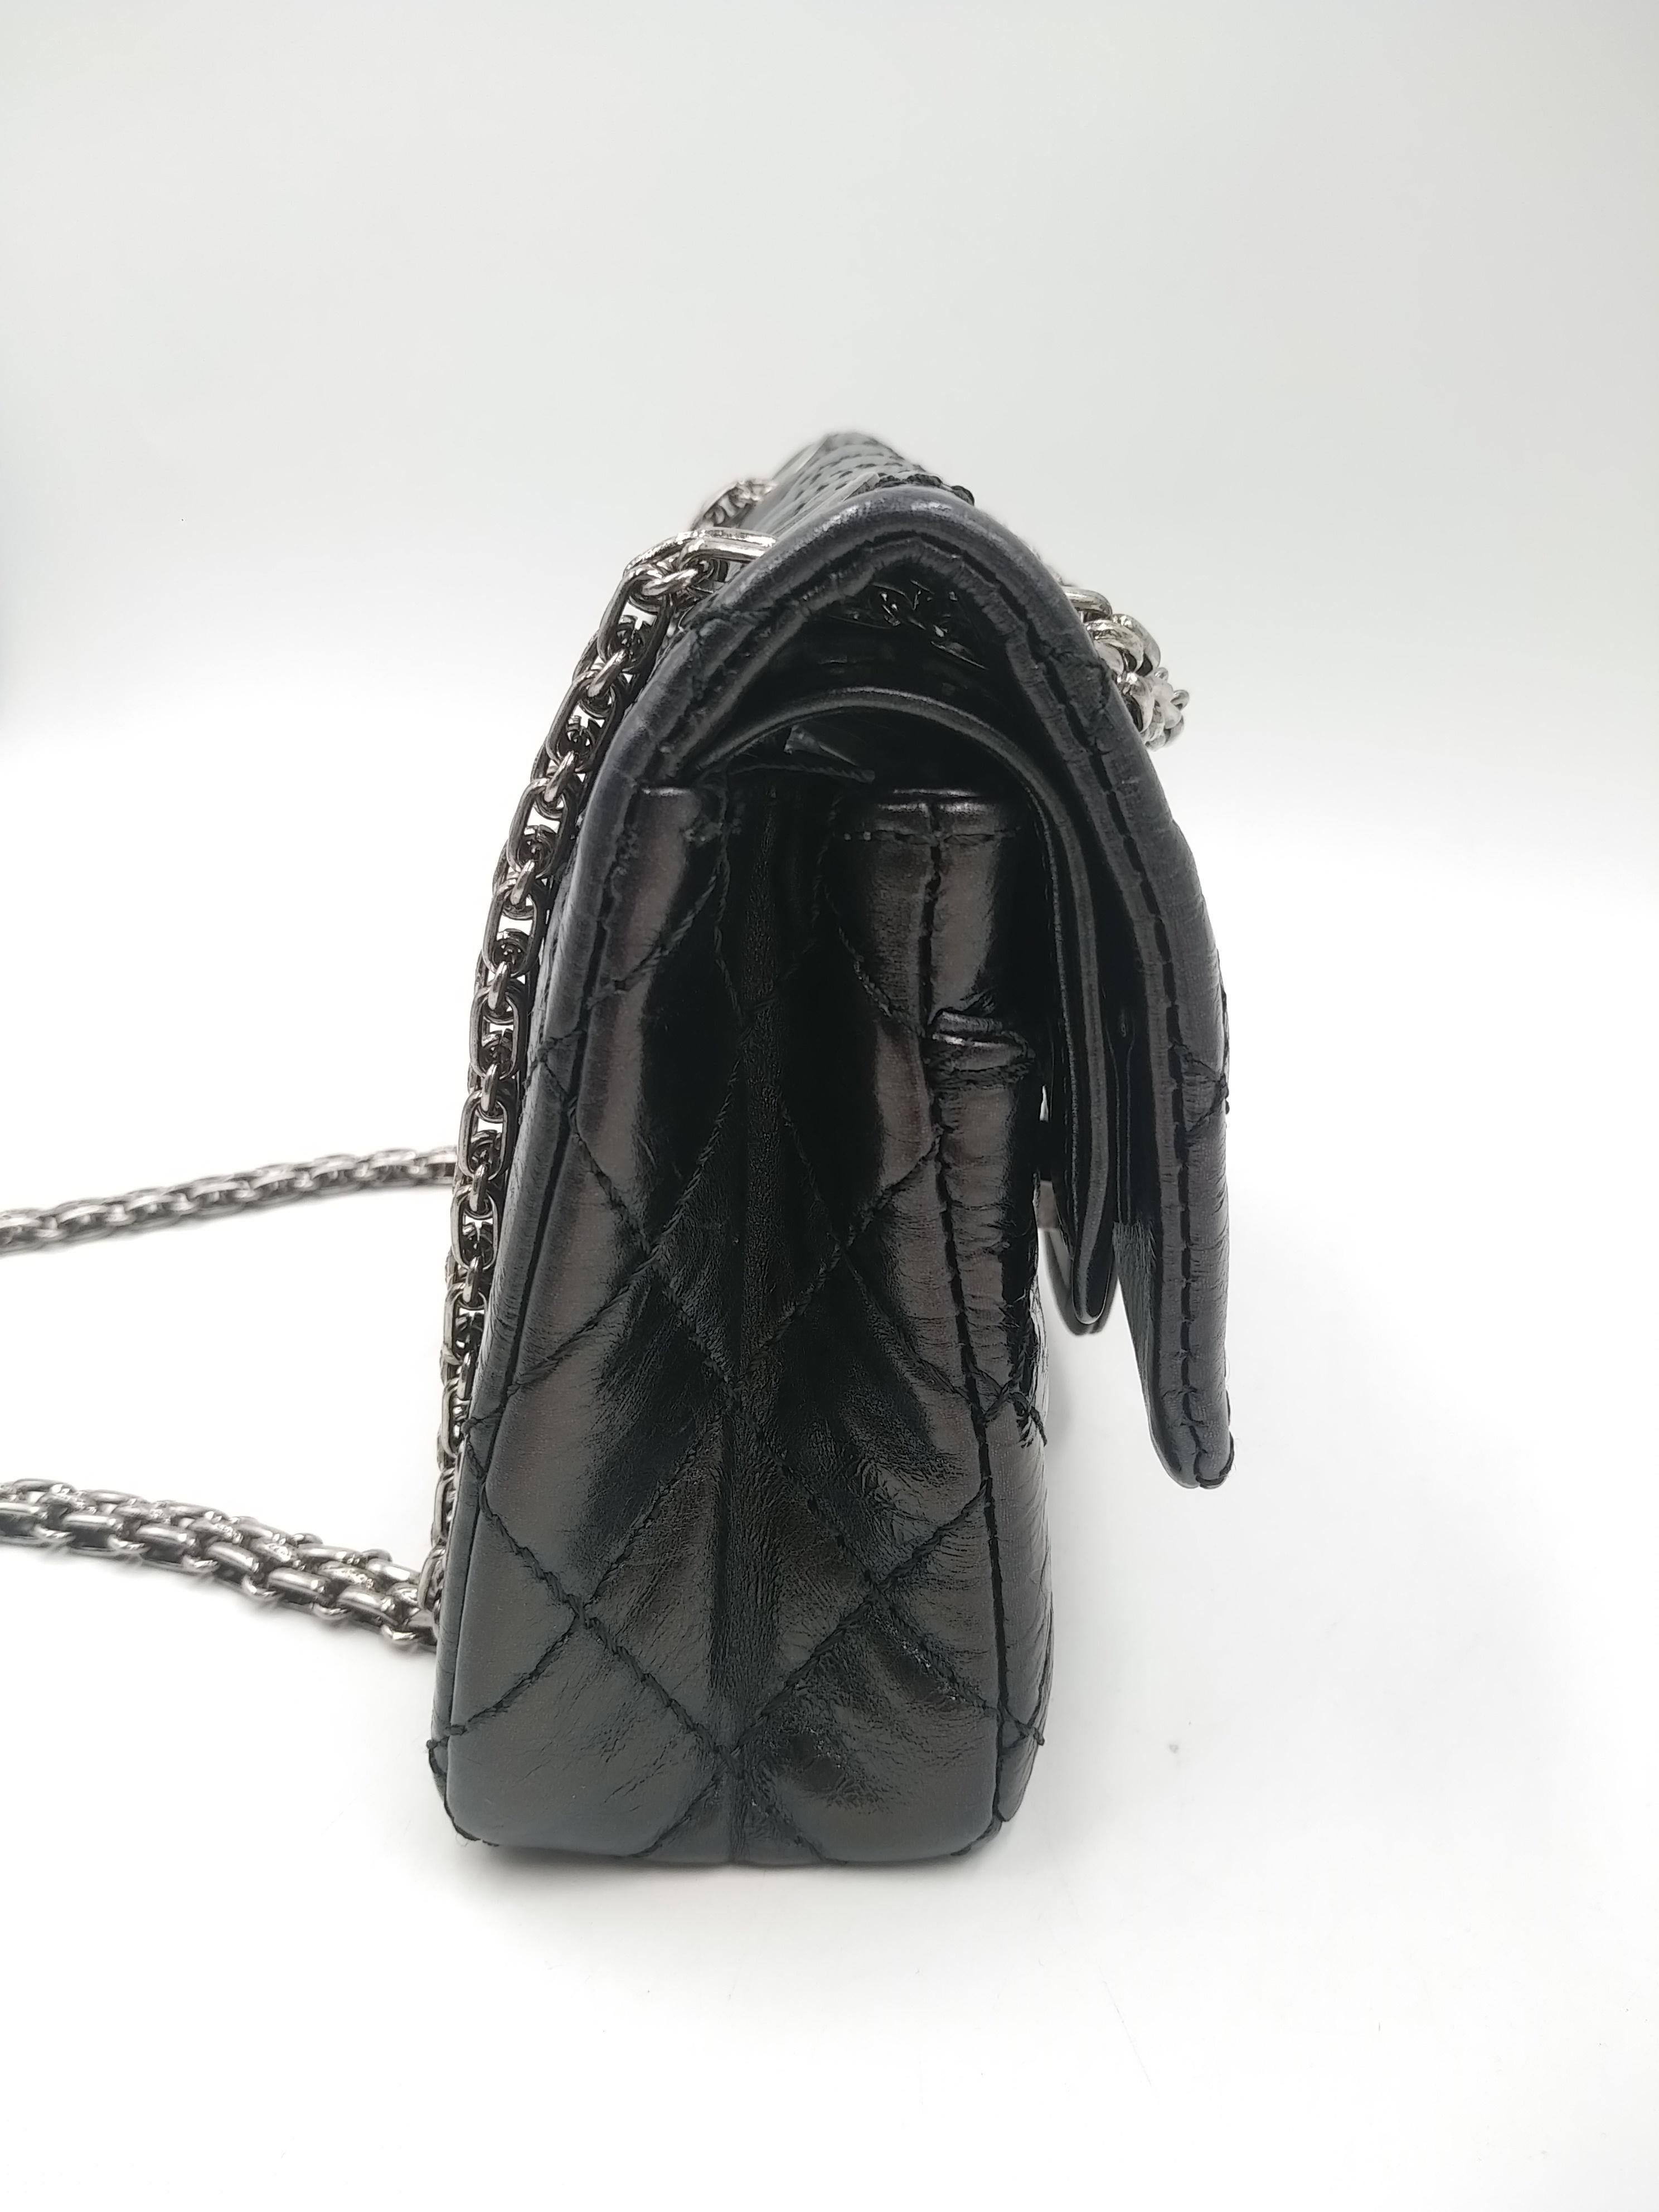 Women's or Men's Chanel Black 2.55  Reissue 224 Bag